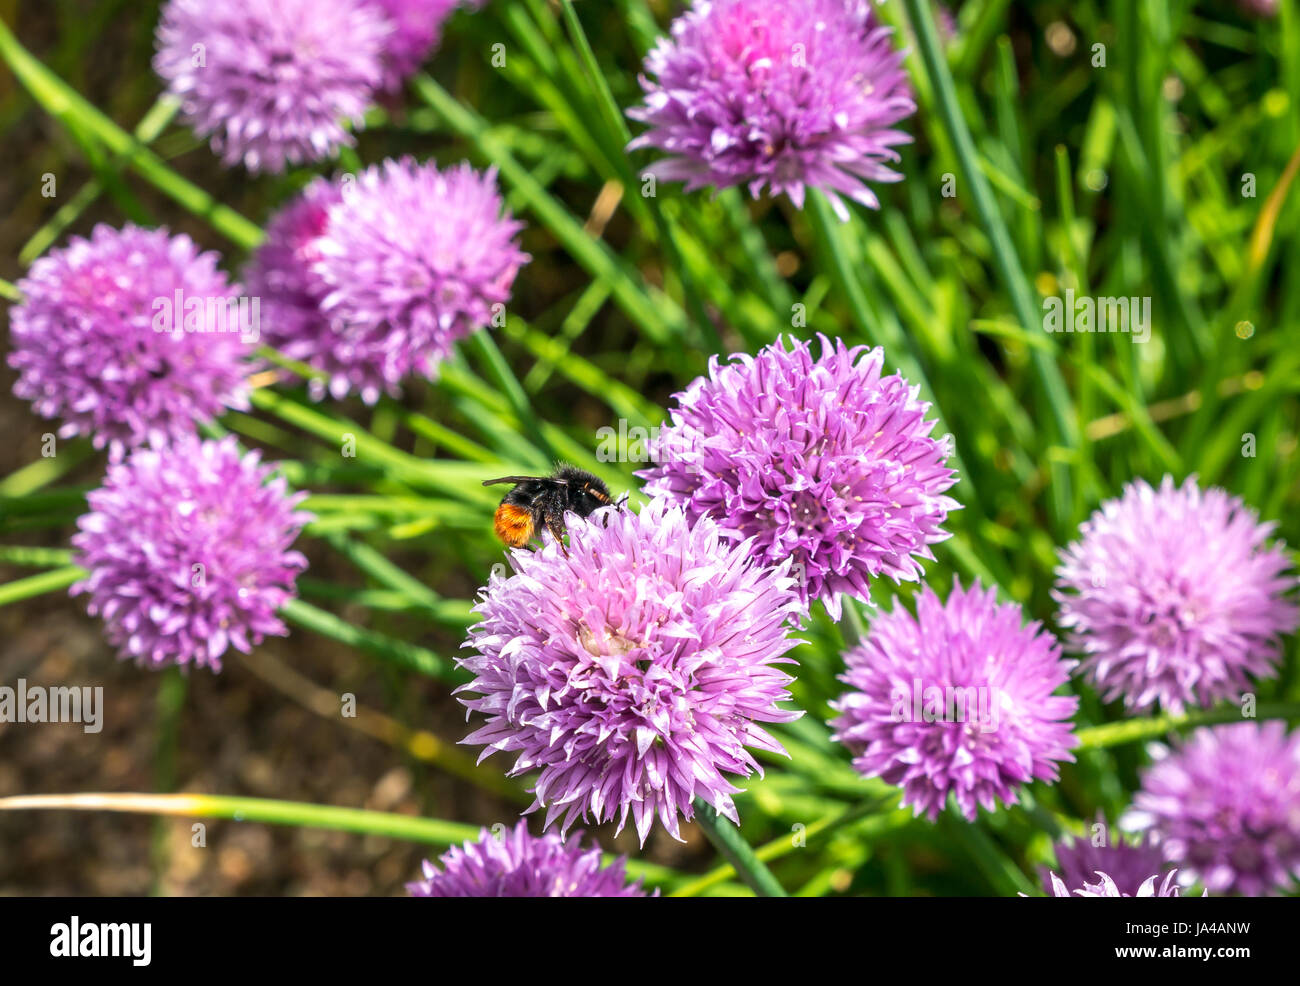 Primo piano di bumblebee dalla coda rossa, Bombus Lapidaparius, su fiore di erba cipollina viola, Allium schoenoprasum, Scozia, Regno Unito Foto Stock